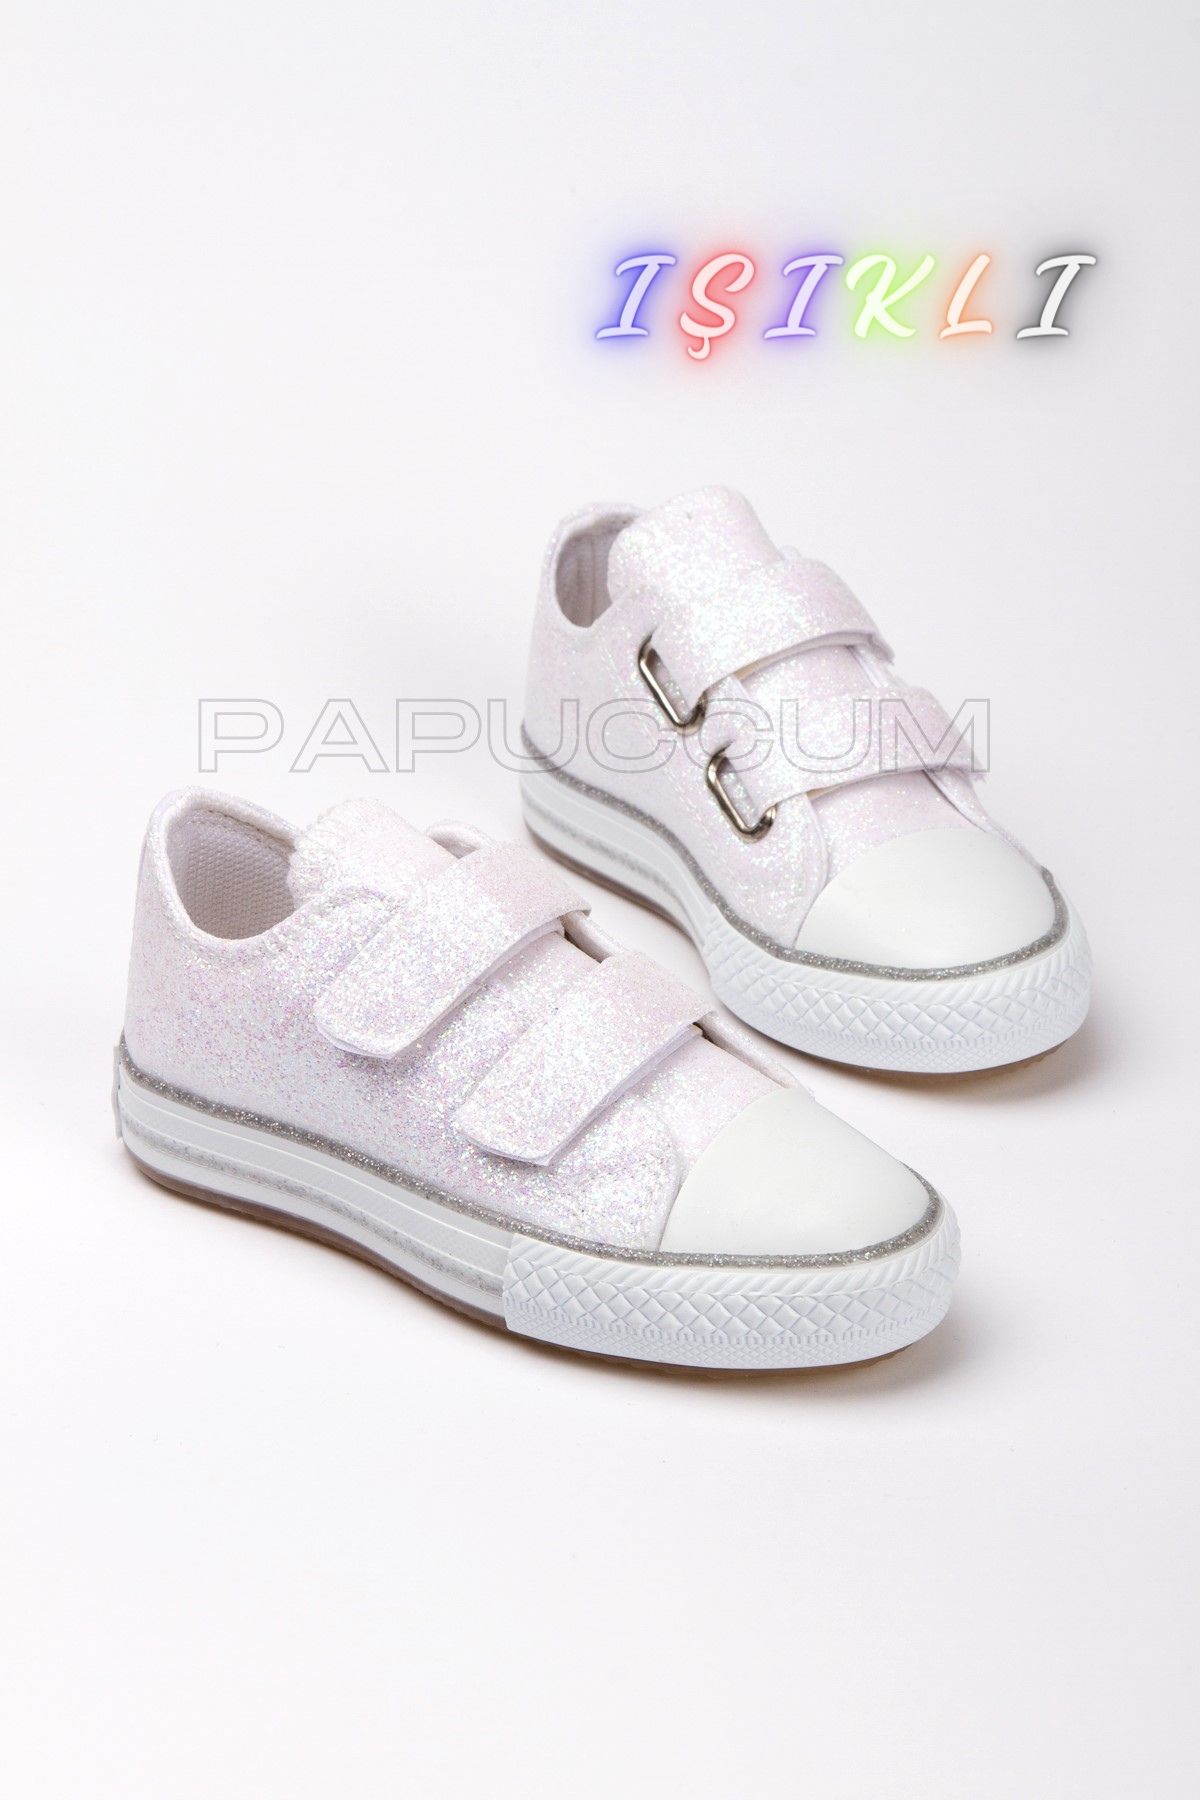 p papuccum ortopedi çocuk ayakkabıları Kız Çocuk Işıklı Spor Ayakkabı